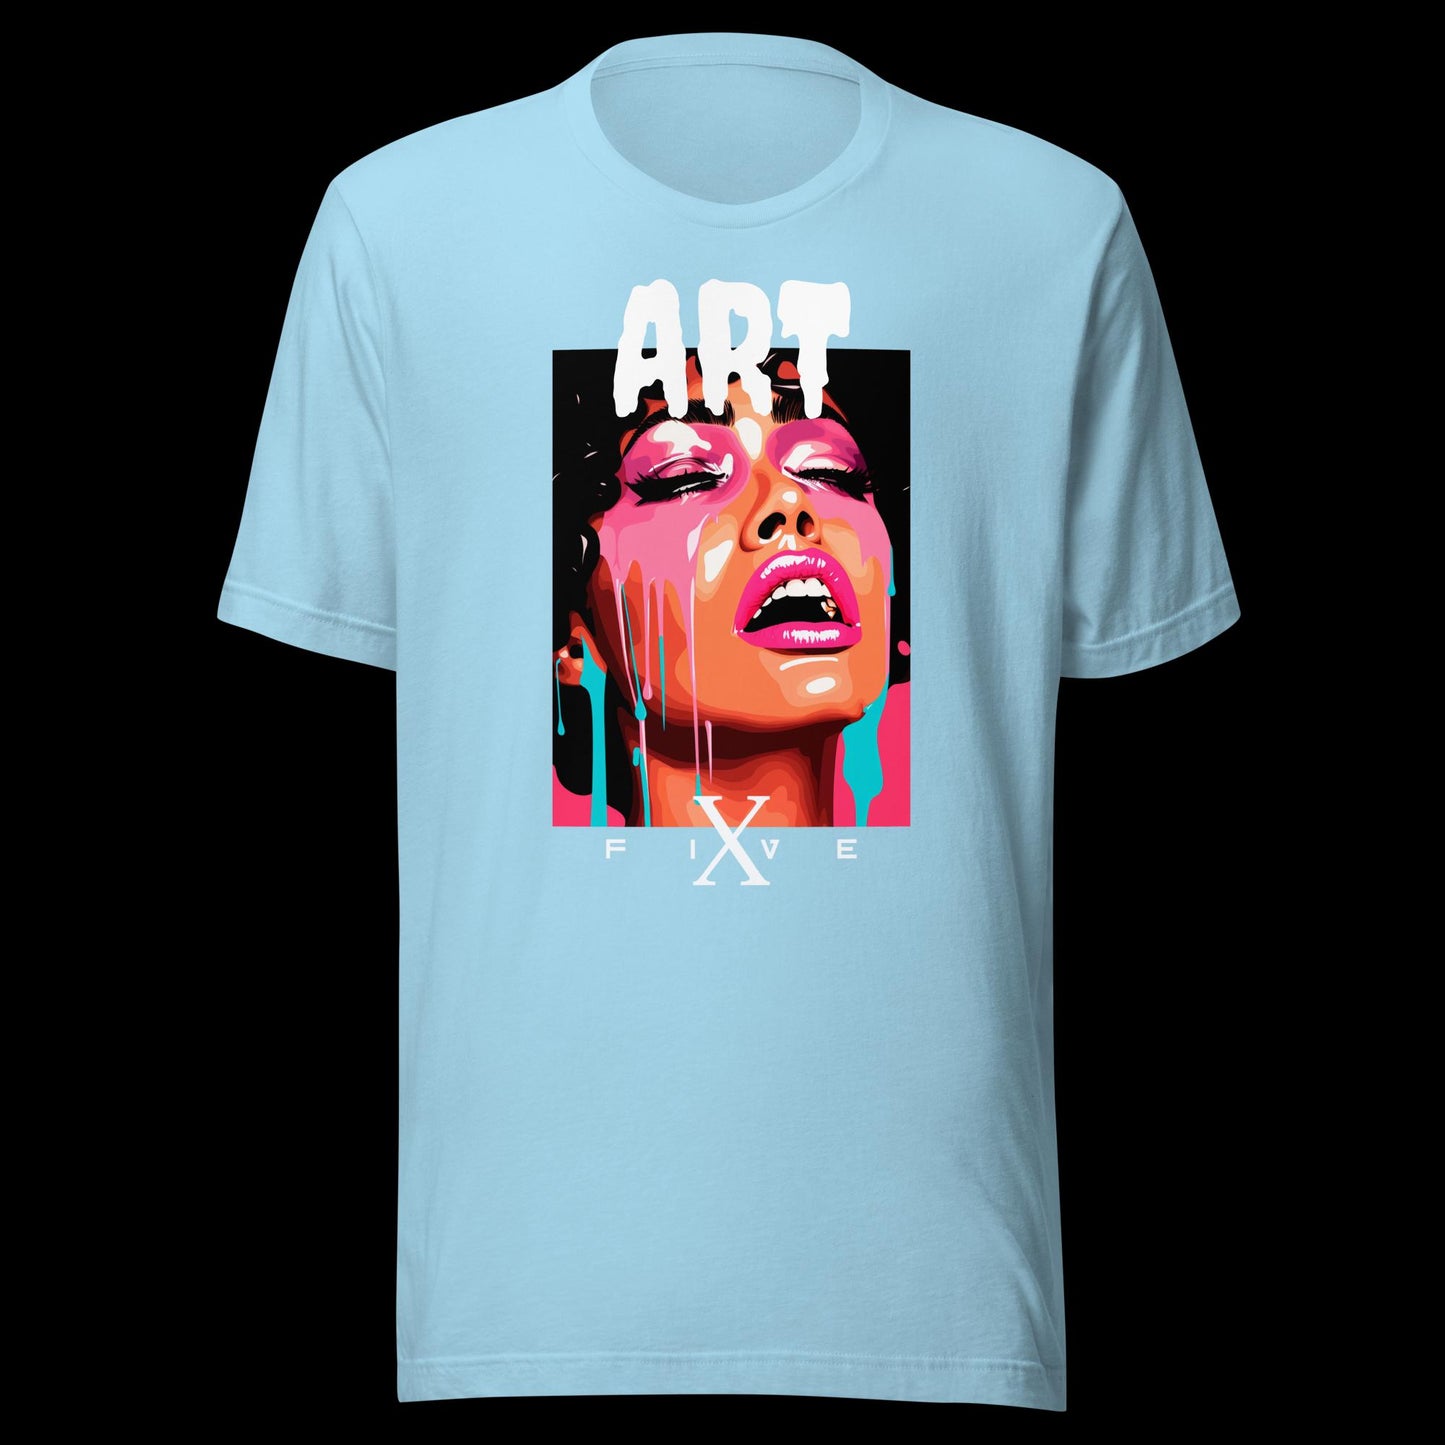 ART X FIVE Unisex t-shirt